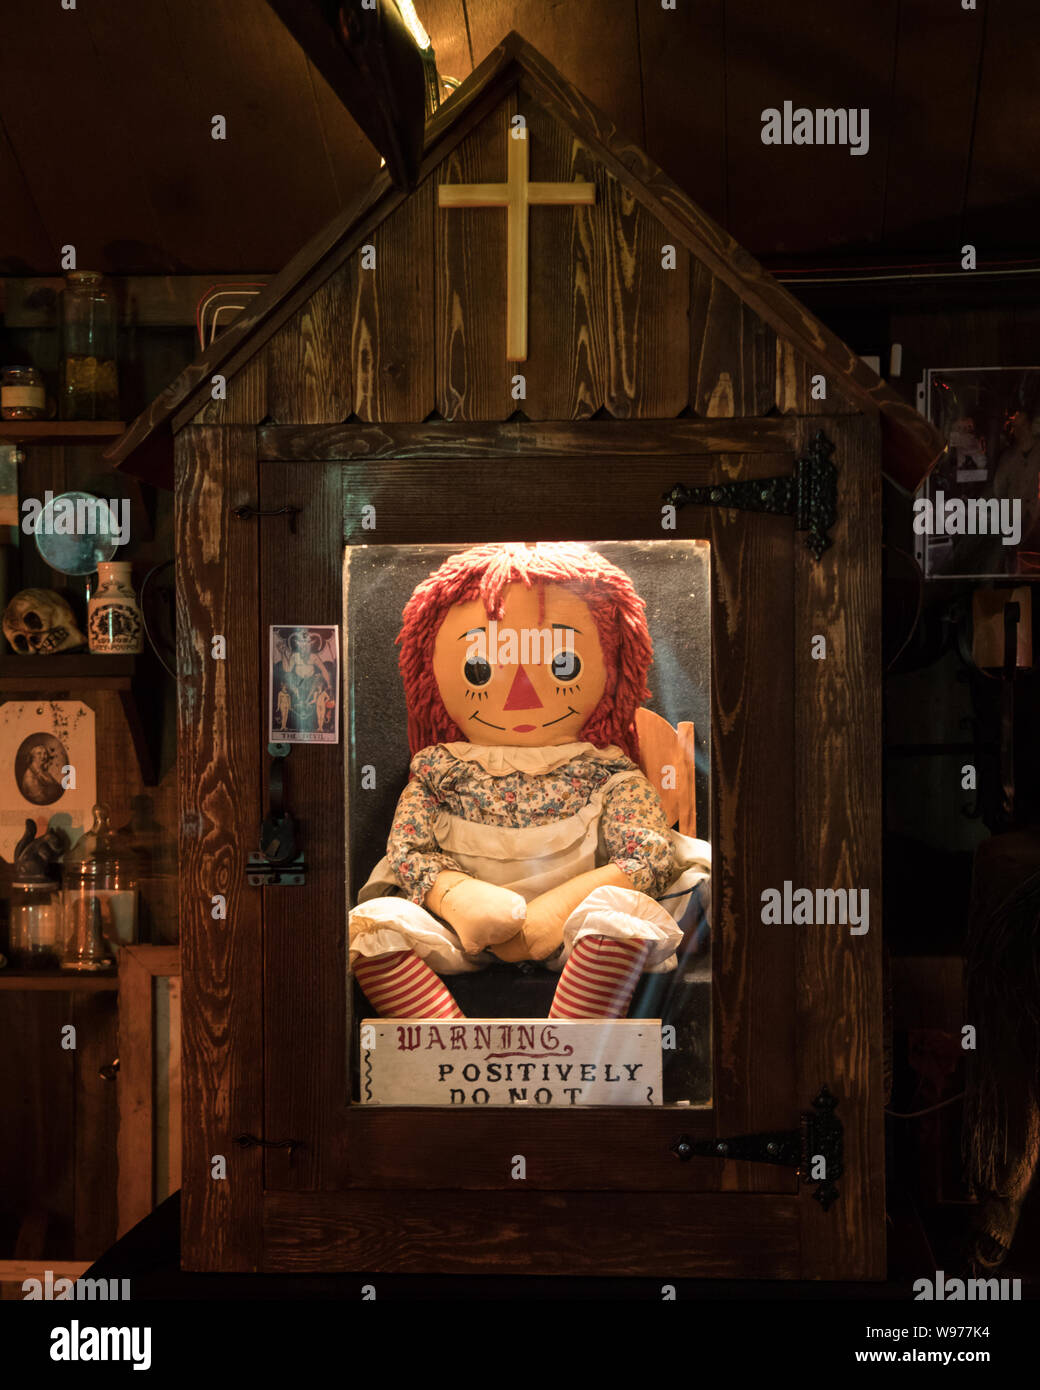 Die Echten Annabelle Puppe, die in der Warren okkulten Museum in Monroe  Connecticut befindet. Dies ist die Puppe, die alle 3 Annabelle Filme auf  basieren Stockfotografie - Alamy